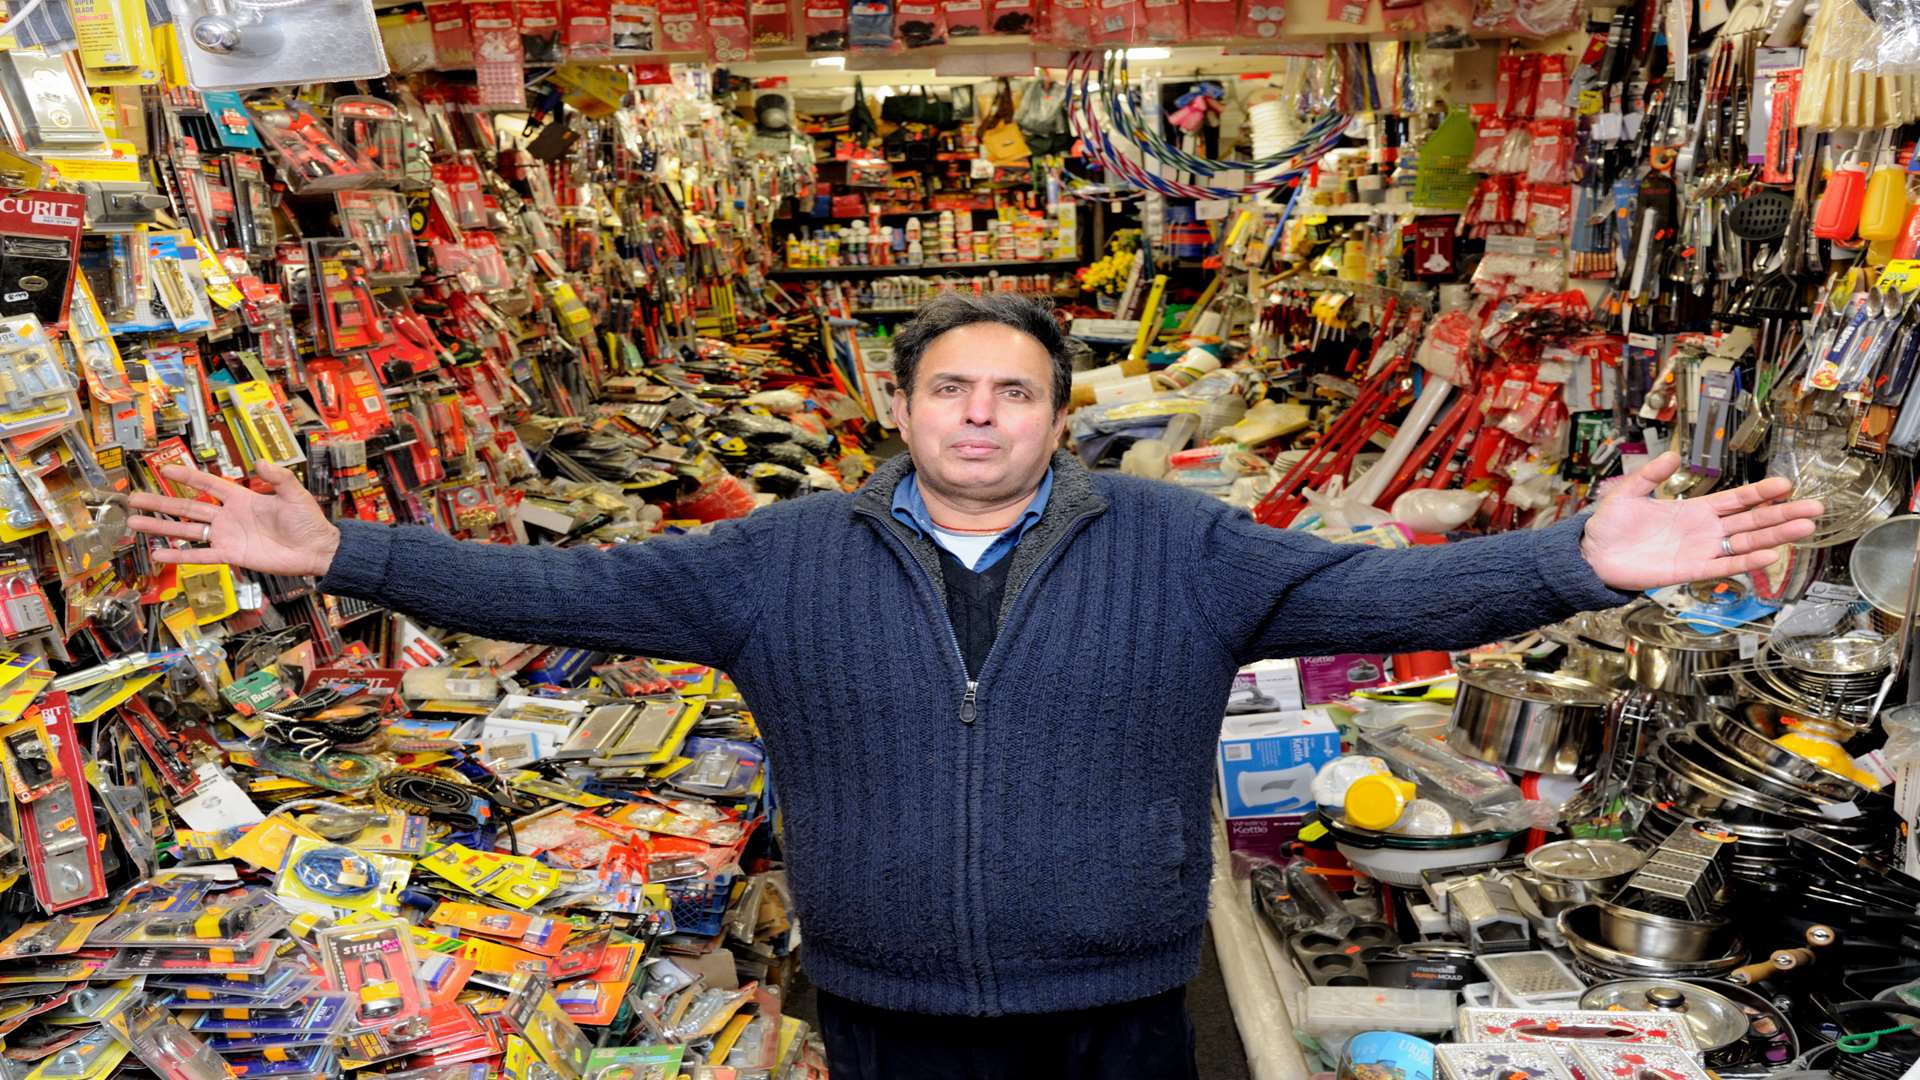 Jasbir Basra in his Mad Sales shop